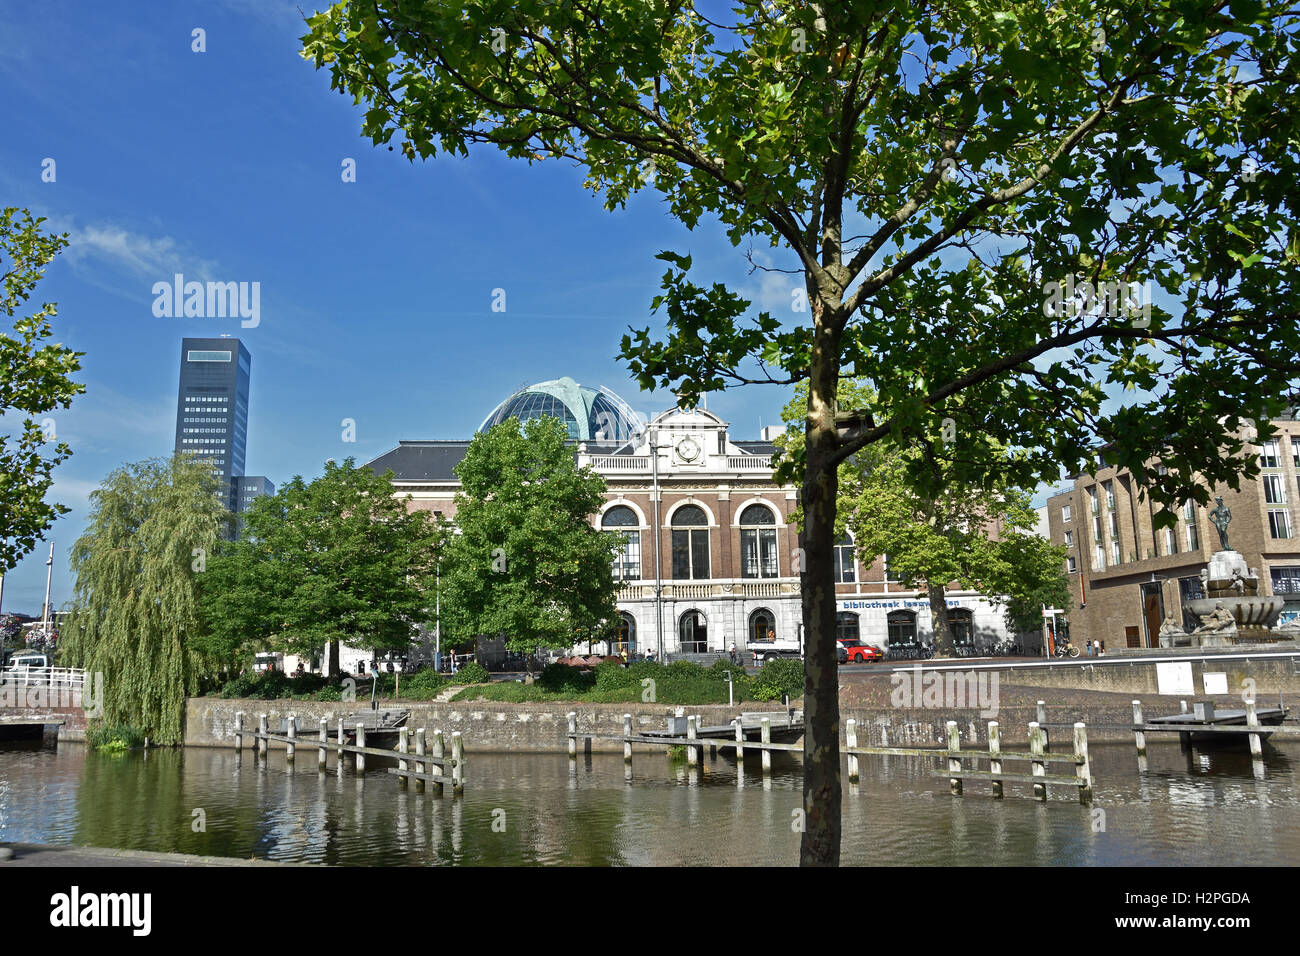 La ville de Leeuwarden Pays-Bas Frise Fryslan centre ancien ( Achmeatower - Willemskade gauche - droite Fries Museum et bibliothèque ) Banque D'Images